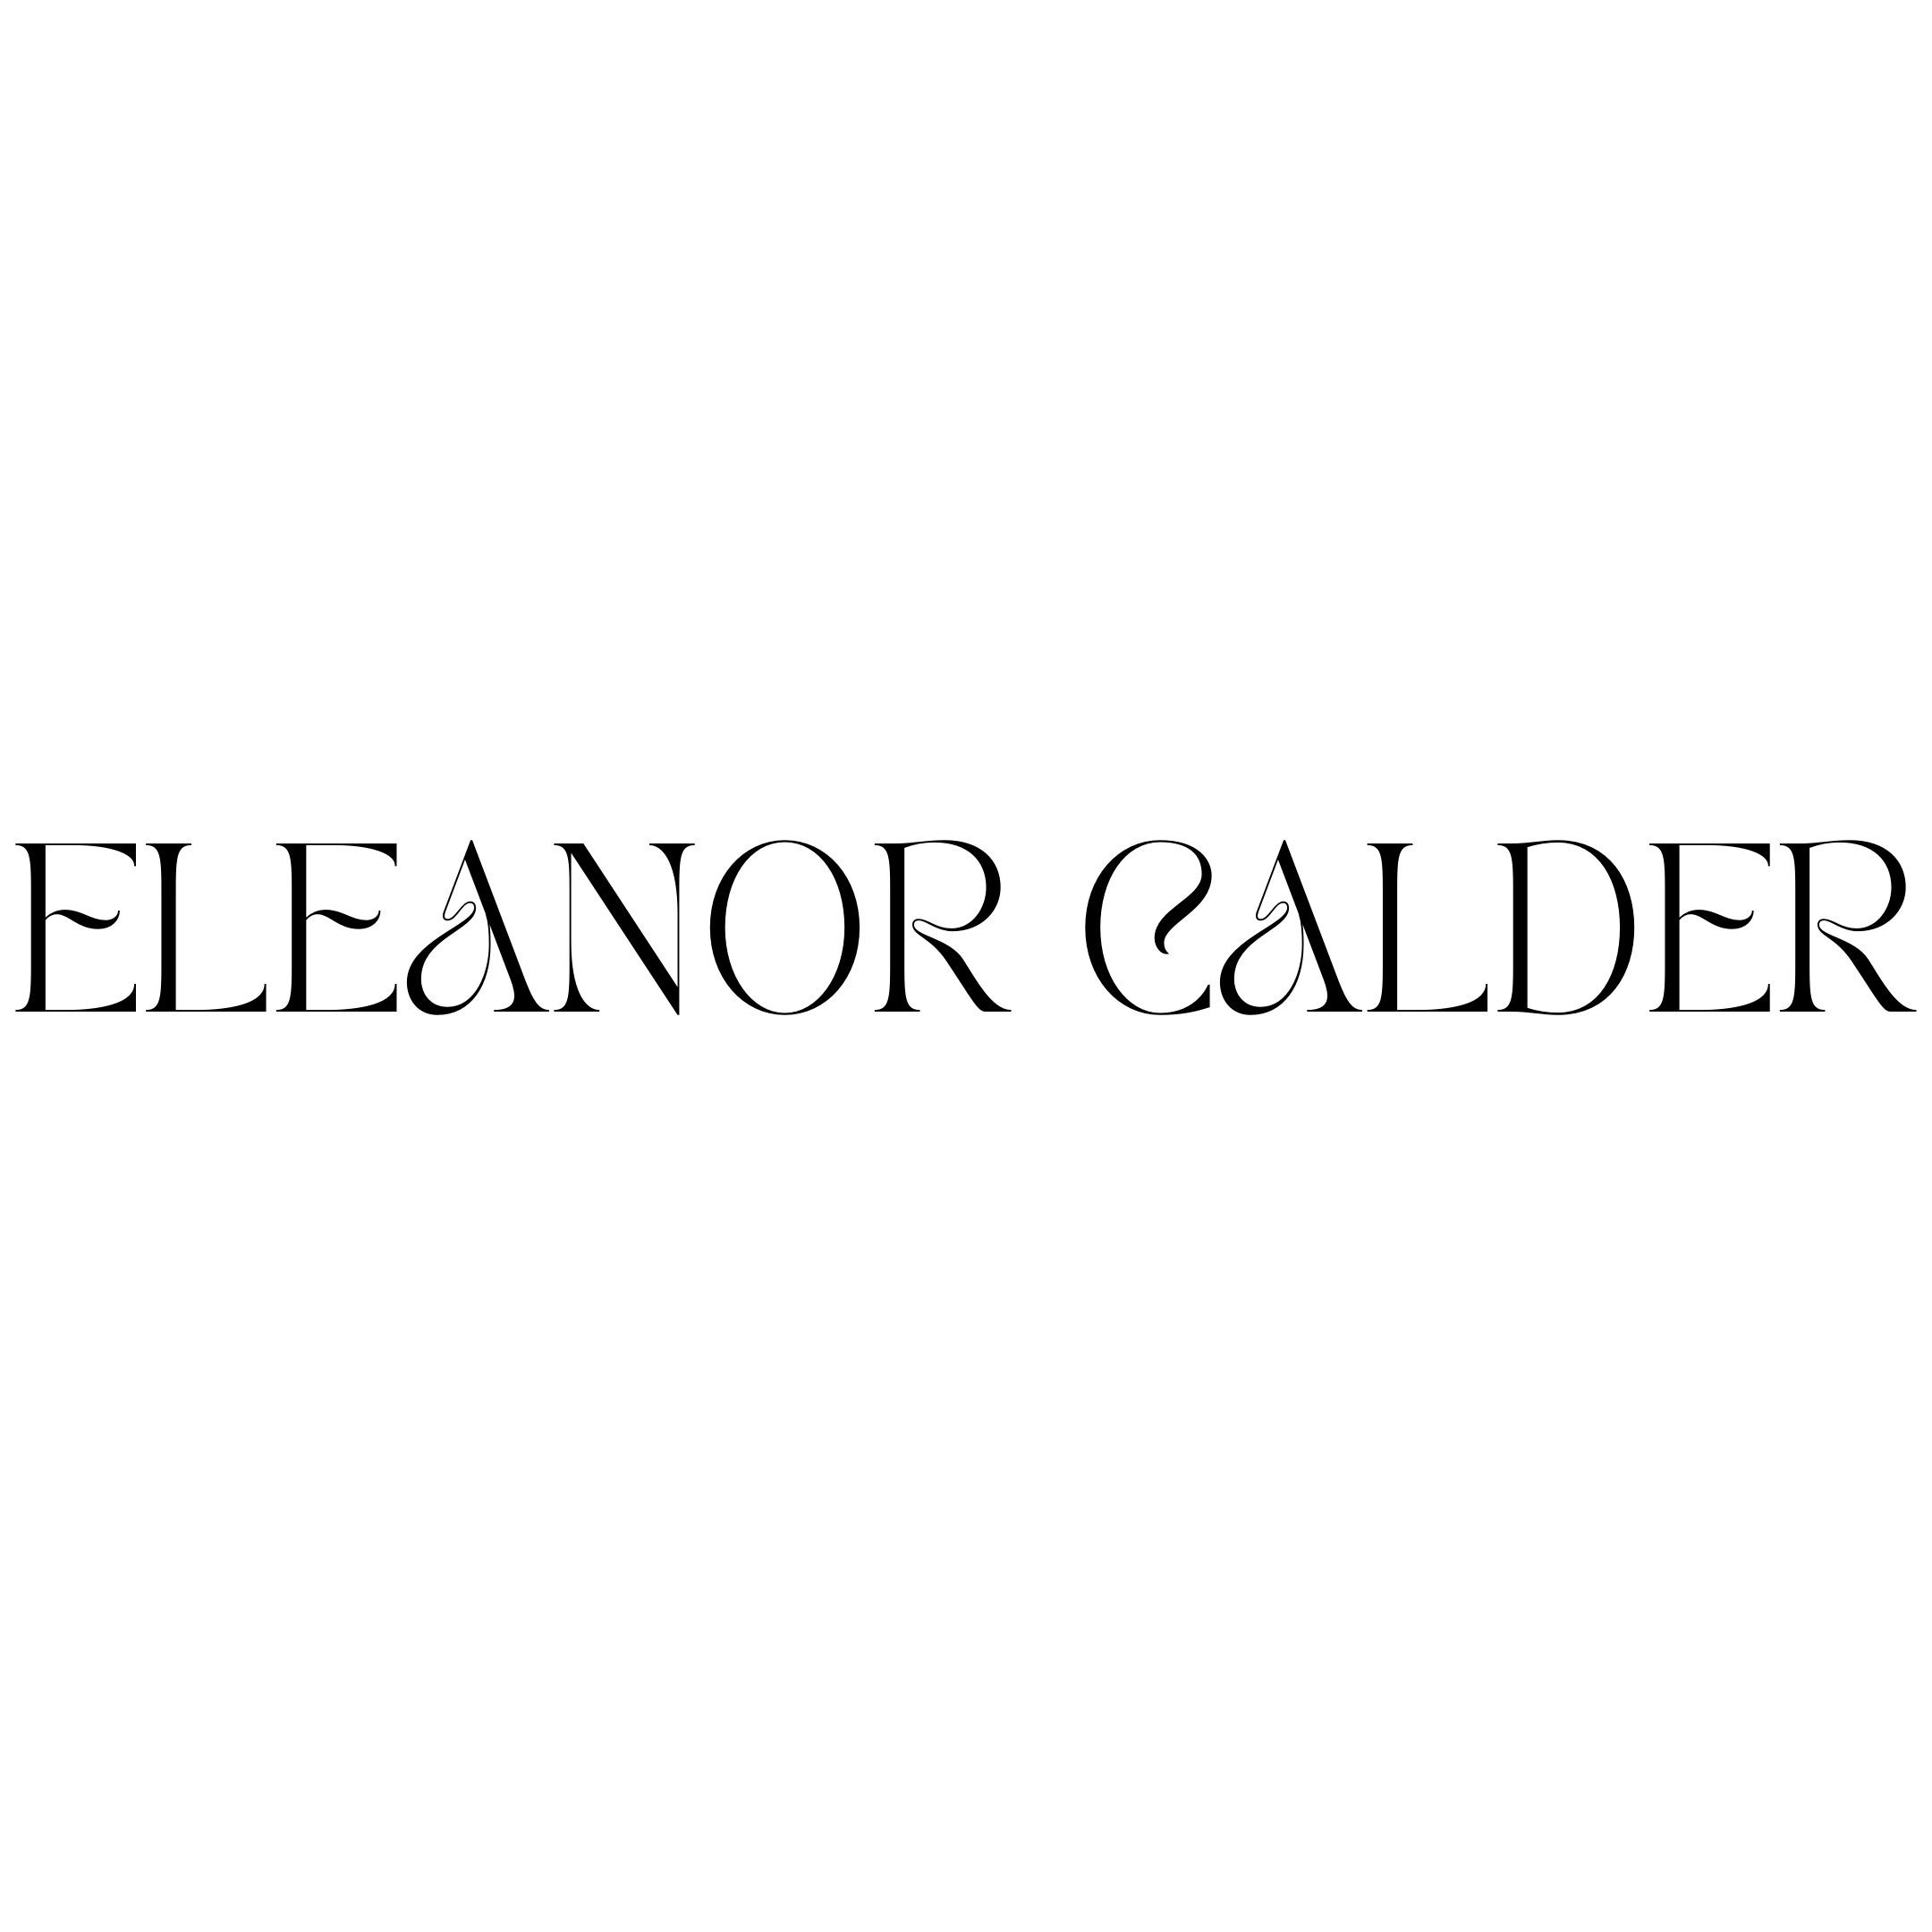 Eleanor Calder